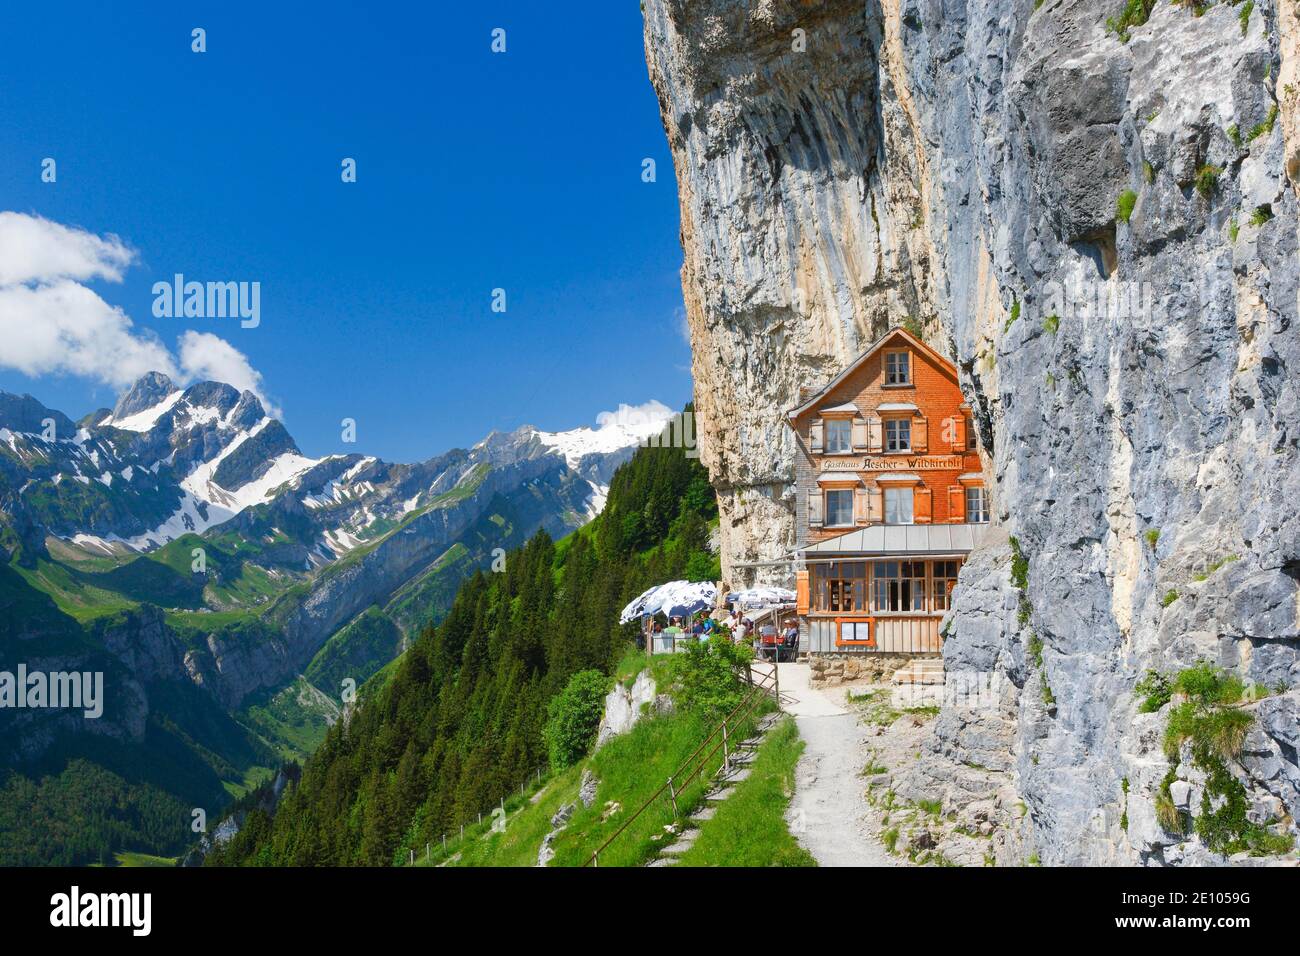 Äscher Wildkirchli, Appenzell Innerrhoden, Switzerland, Europe Stock Photo  - Alamy